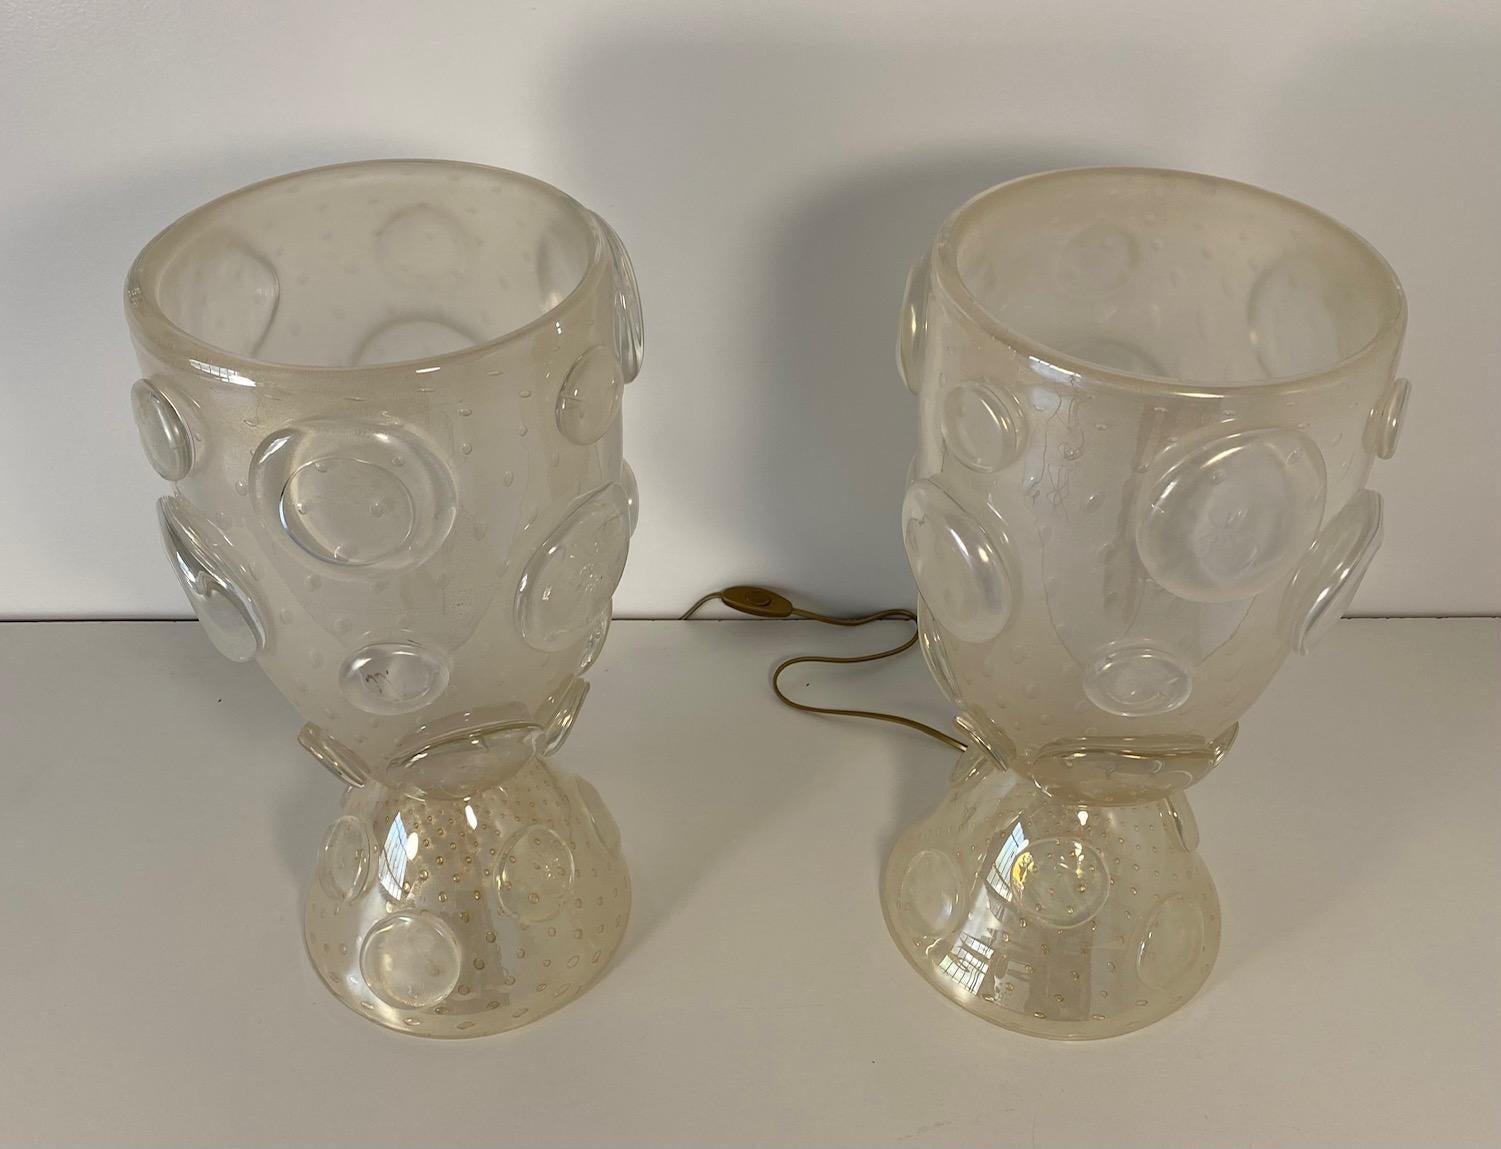 Dieses Paar Vasenlampen wurde in Italien hergestellt, in Murano, der Welthauptstadt der Glasherstellung. 
Sie sind komplett aus weißem Murano-Glas gefertigt, in dem sich goldene Blasen befinden. Auch die Zierkreise sind aus dem gleichen besonderen